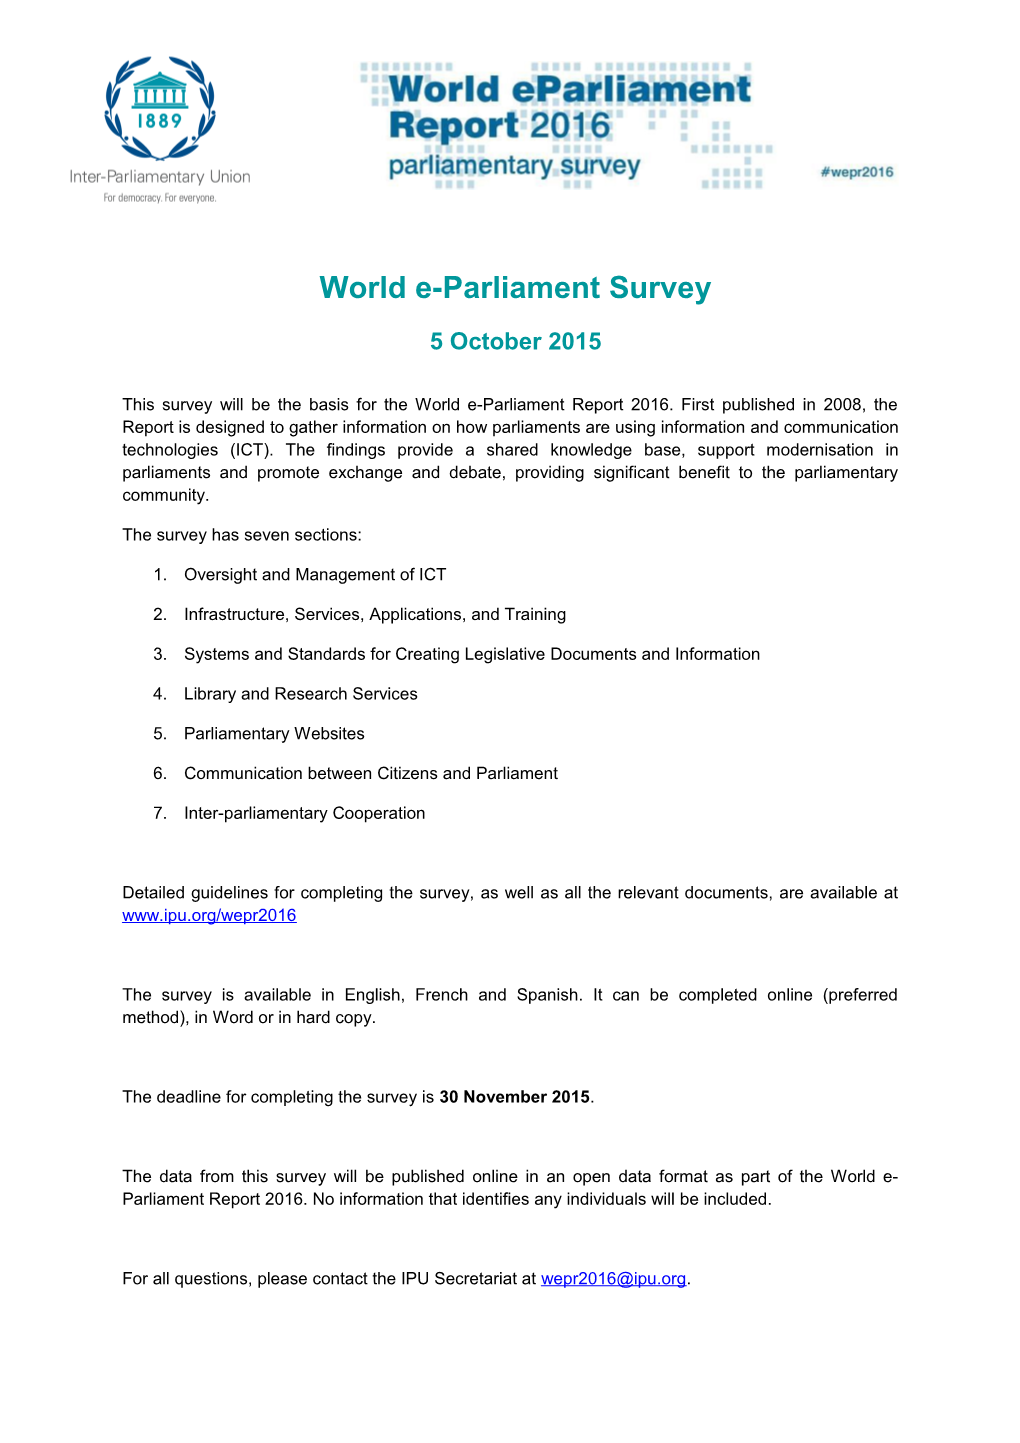 World E-Parliament Survey